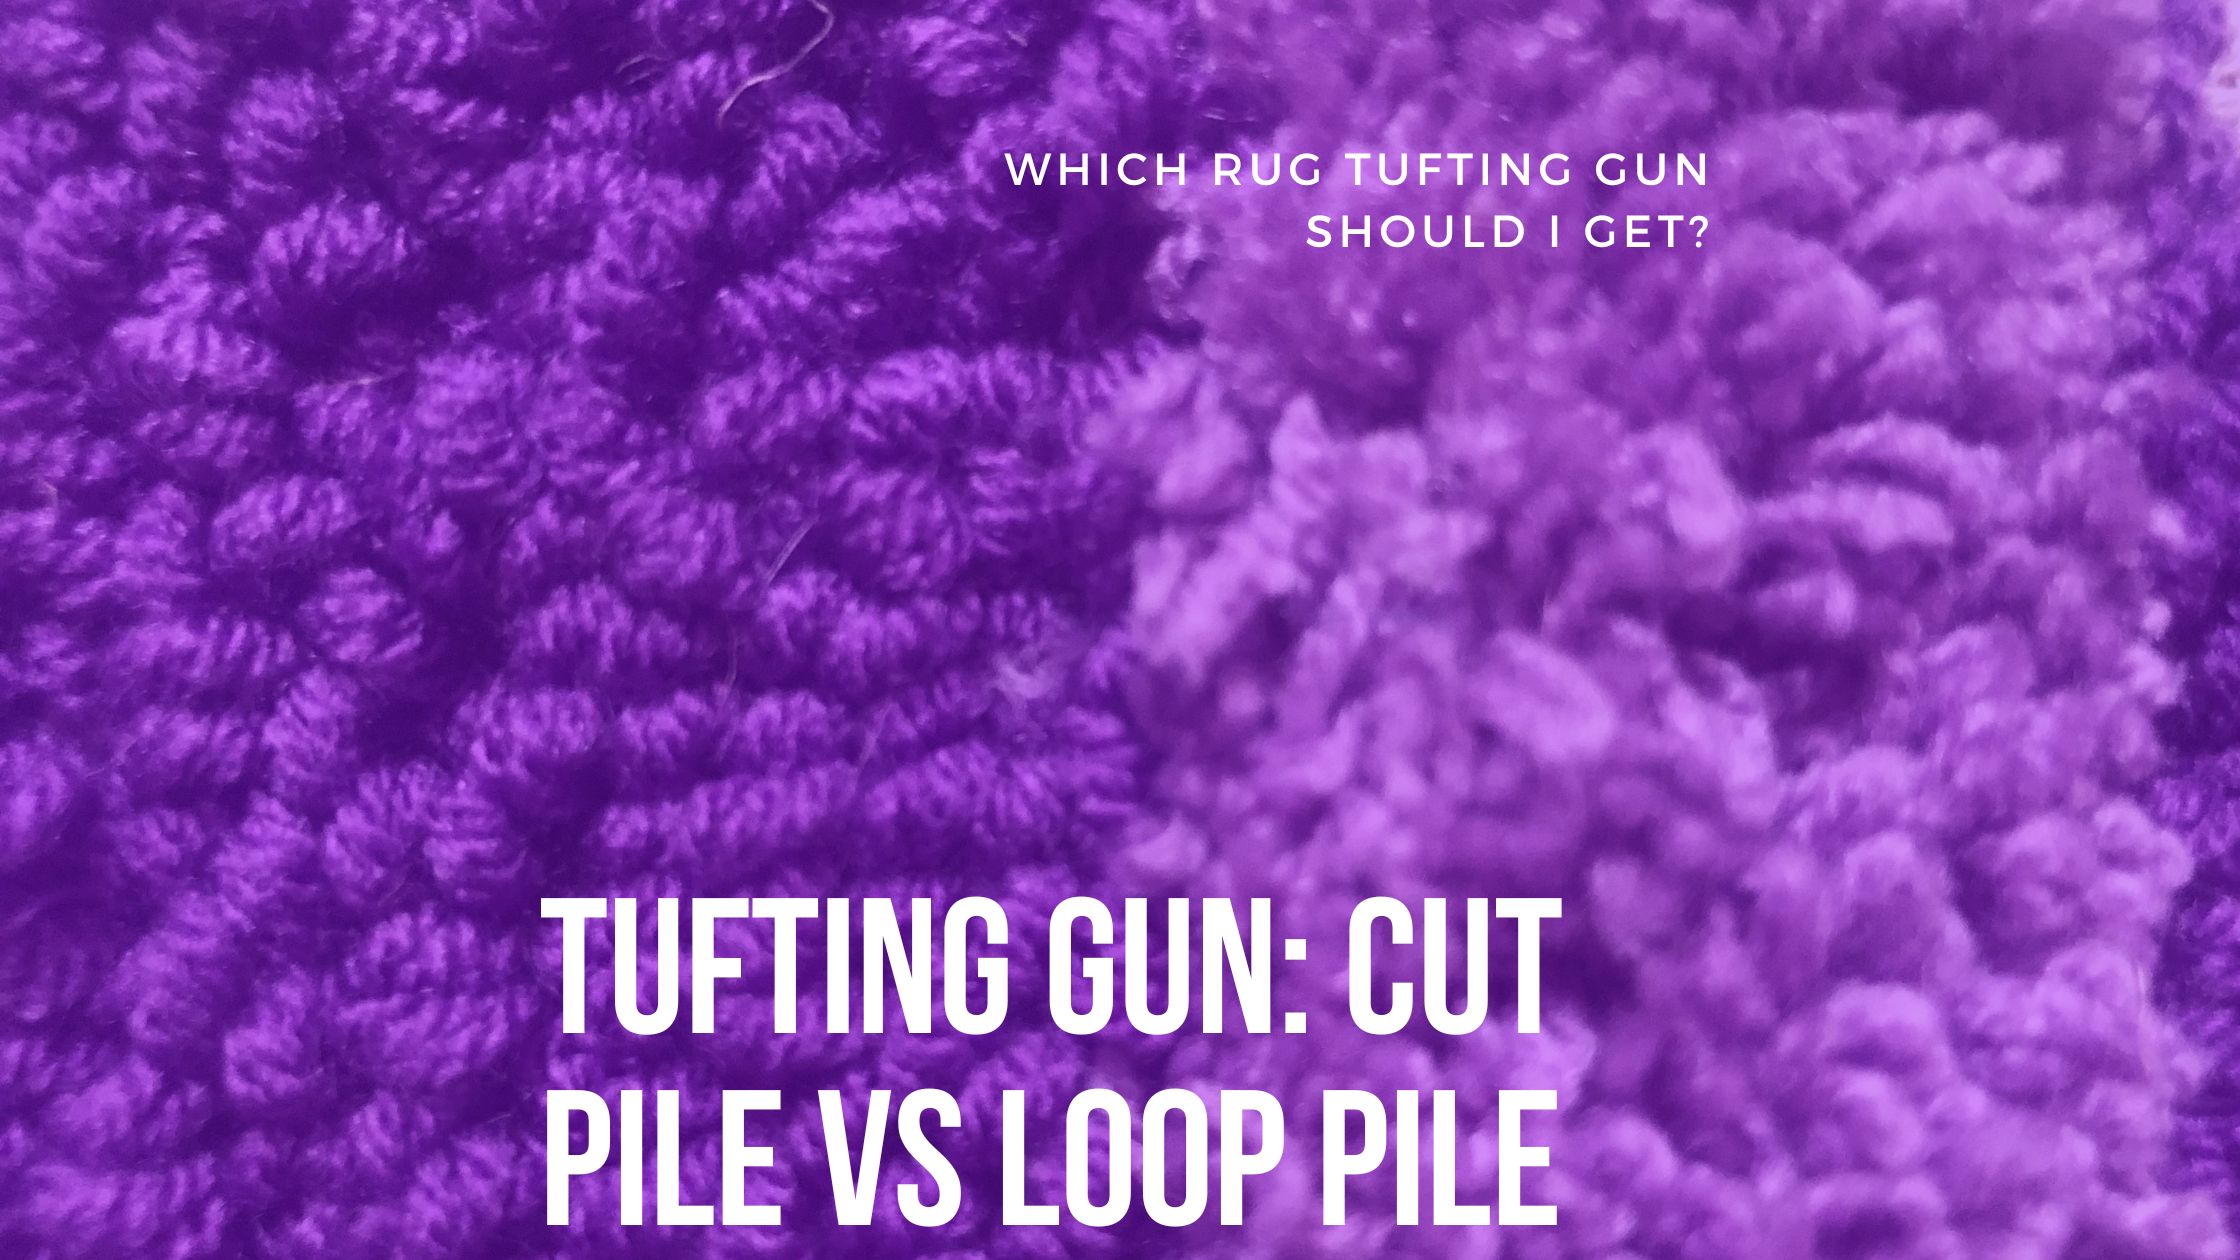 Tufting Gun: Cut Pile vs Loop Pile